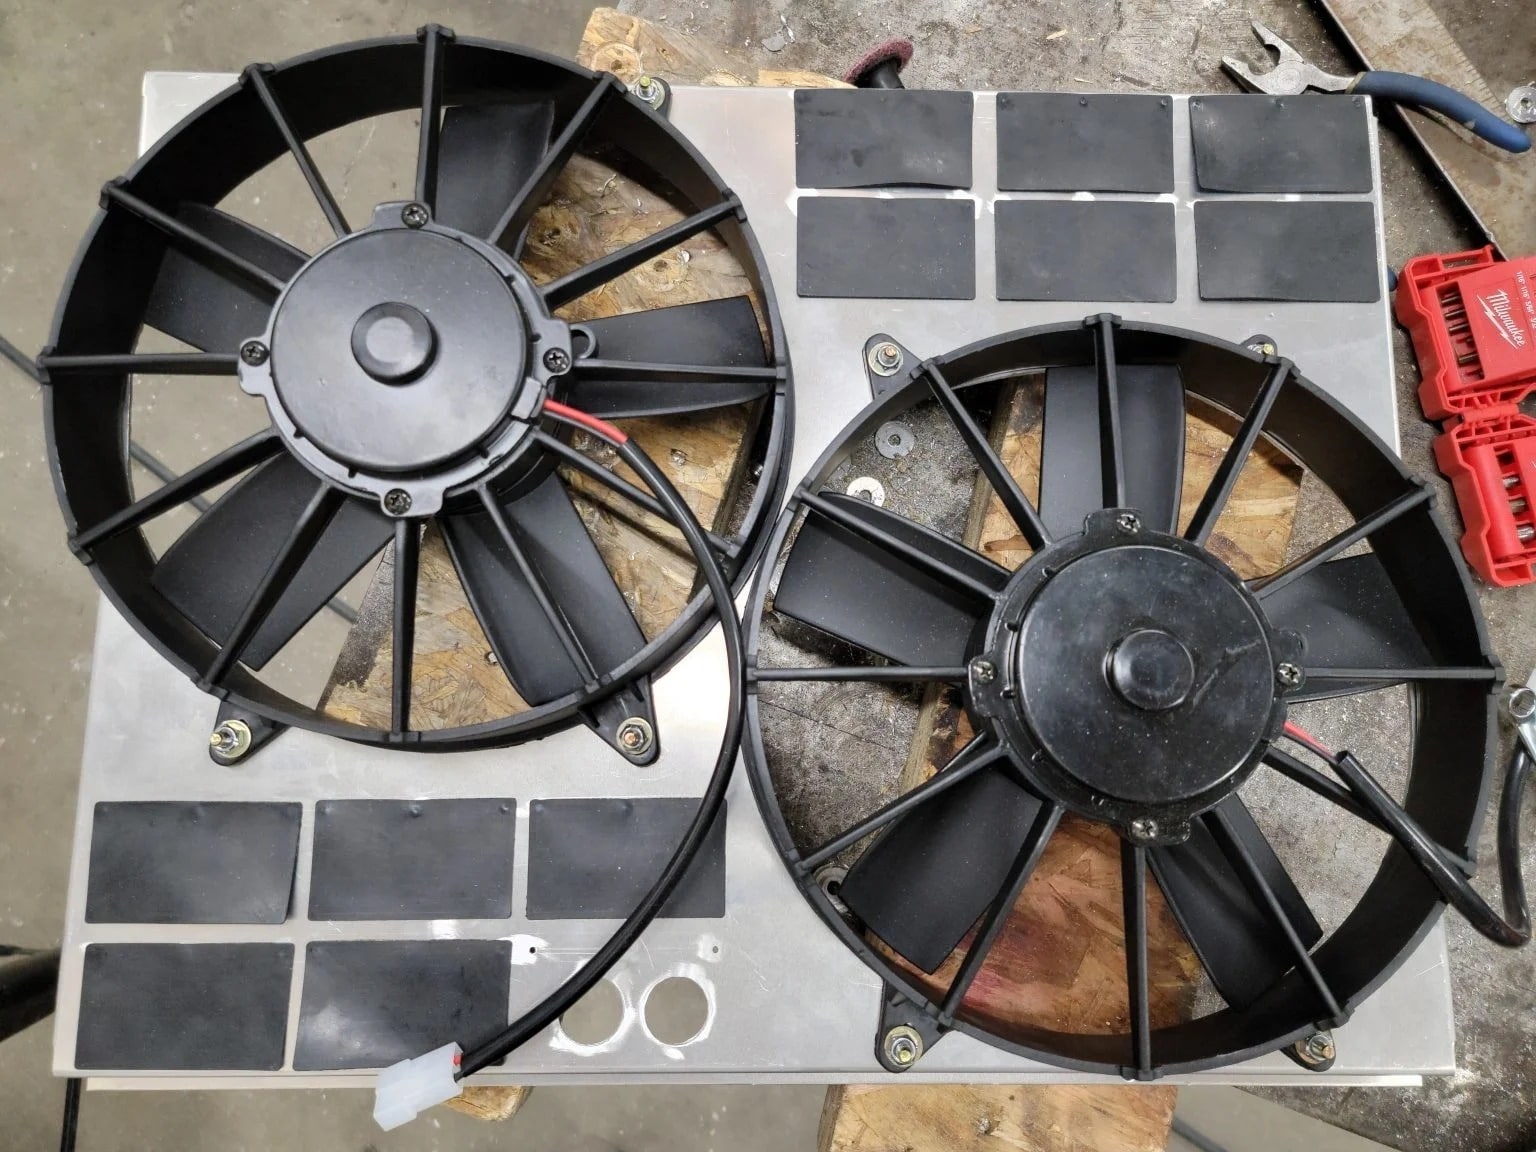 A radiator fan mount.